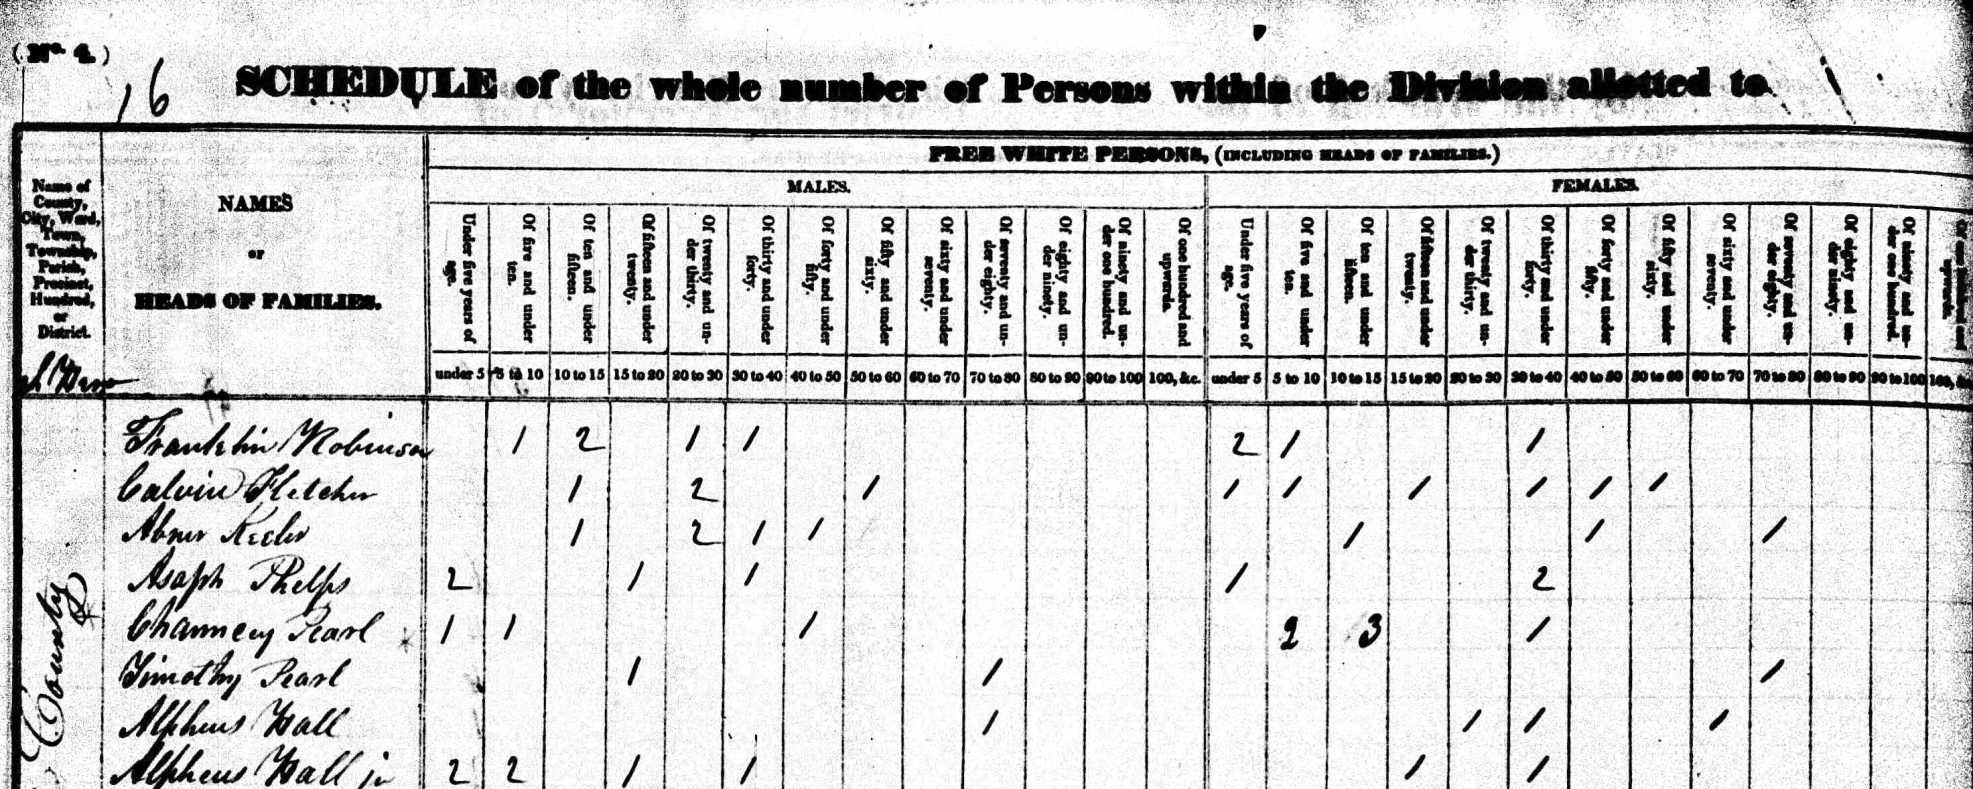 1830 Census Form